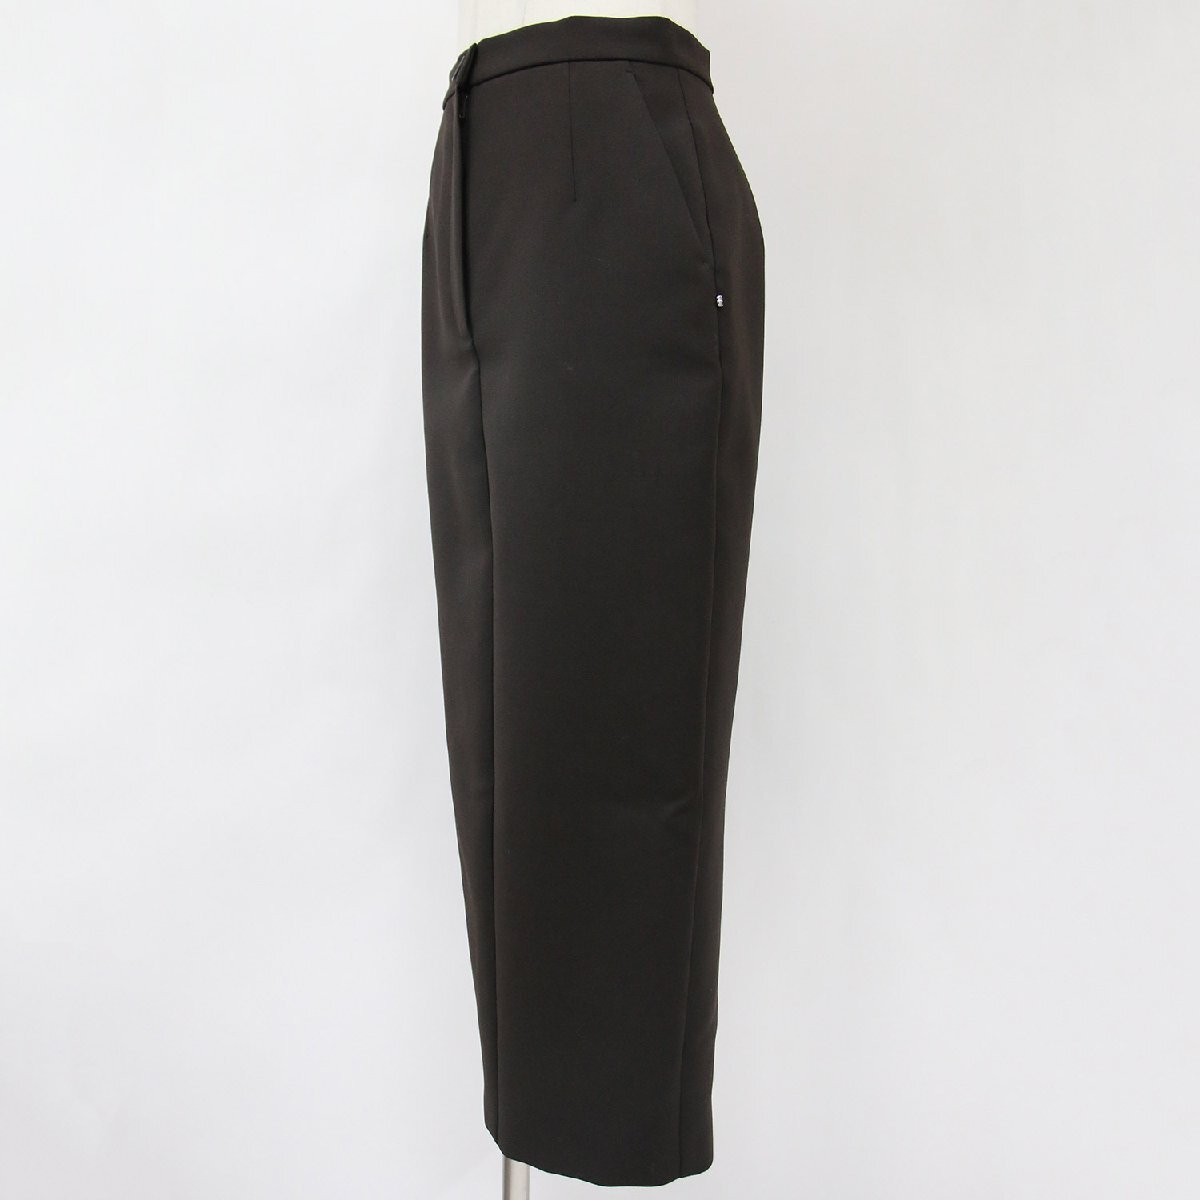 SPORTMAX Sports Max skirt long pen sill skirt dark brown 36 wool tight skirt bottoms office beautiful .